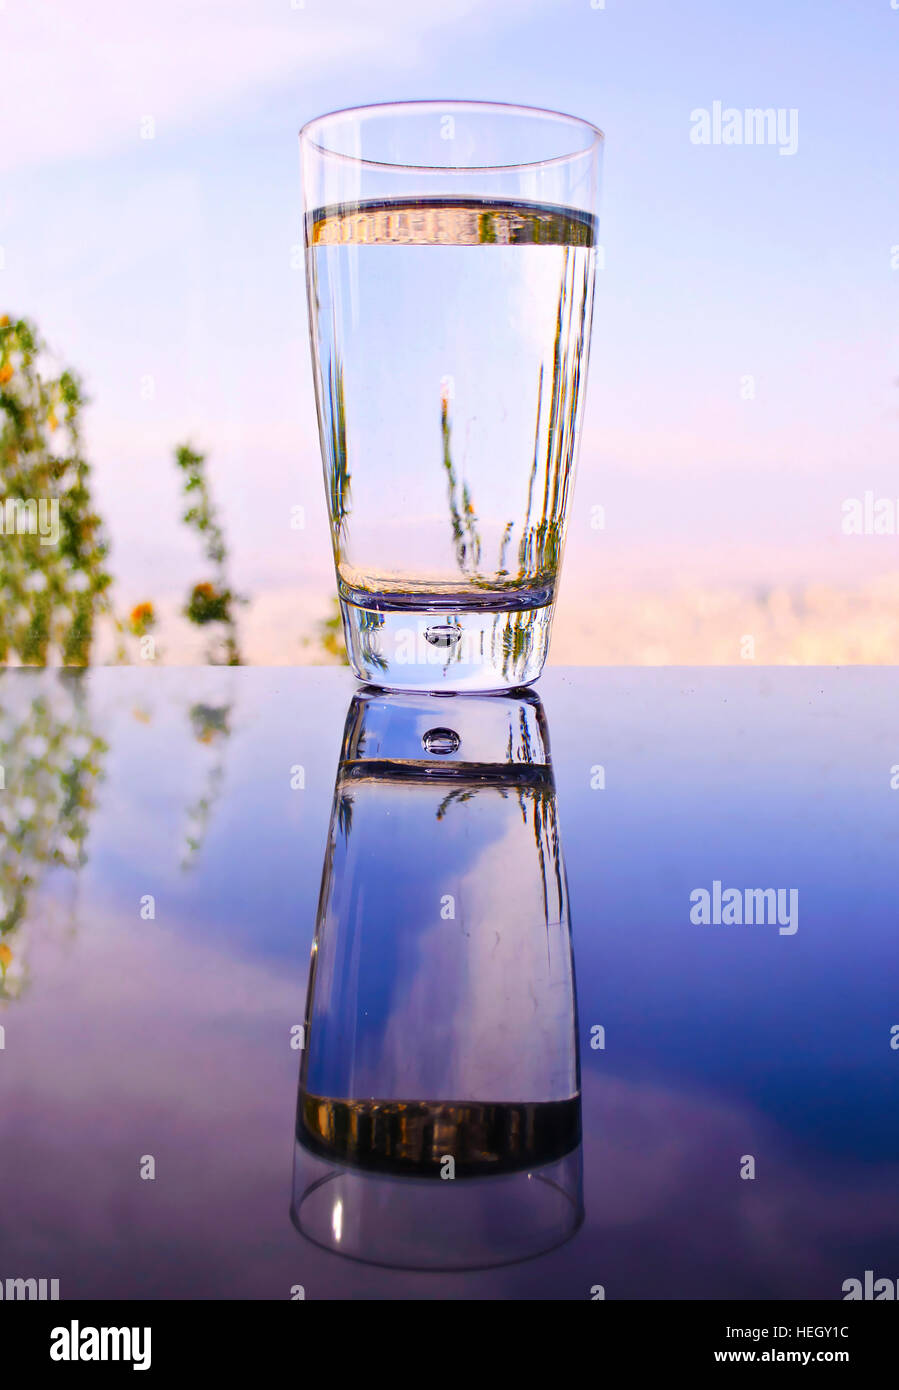 Le verre avec de l'eau reflet sur table - soirée fond coucher de soleil  Photo Stock - Alamy